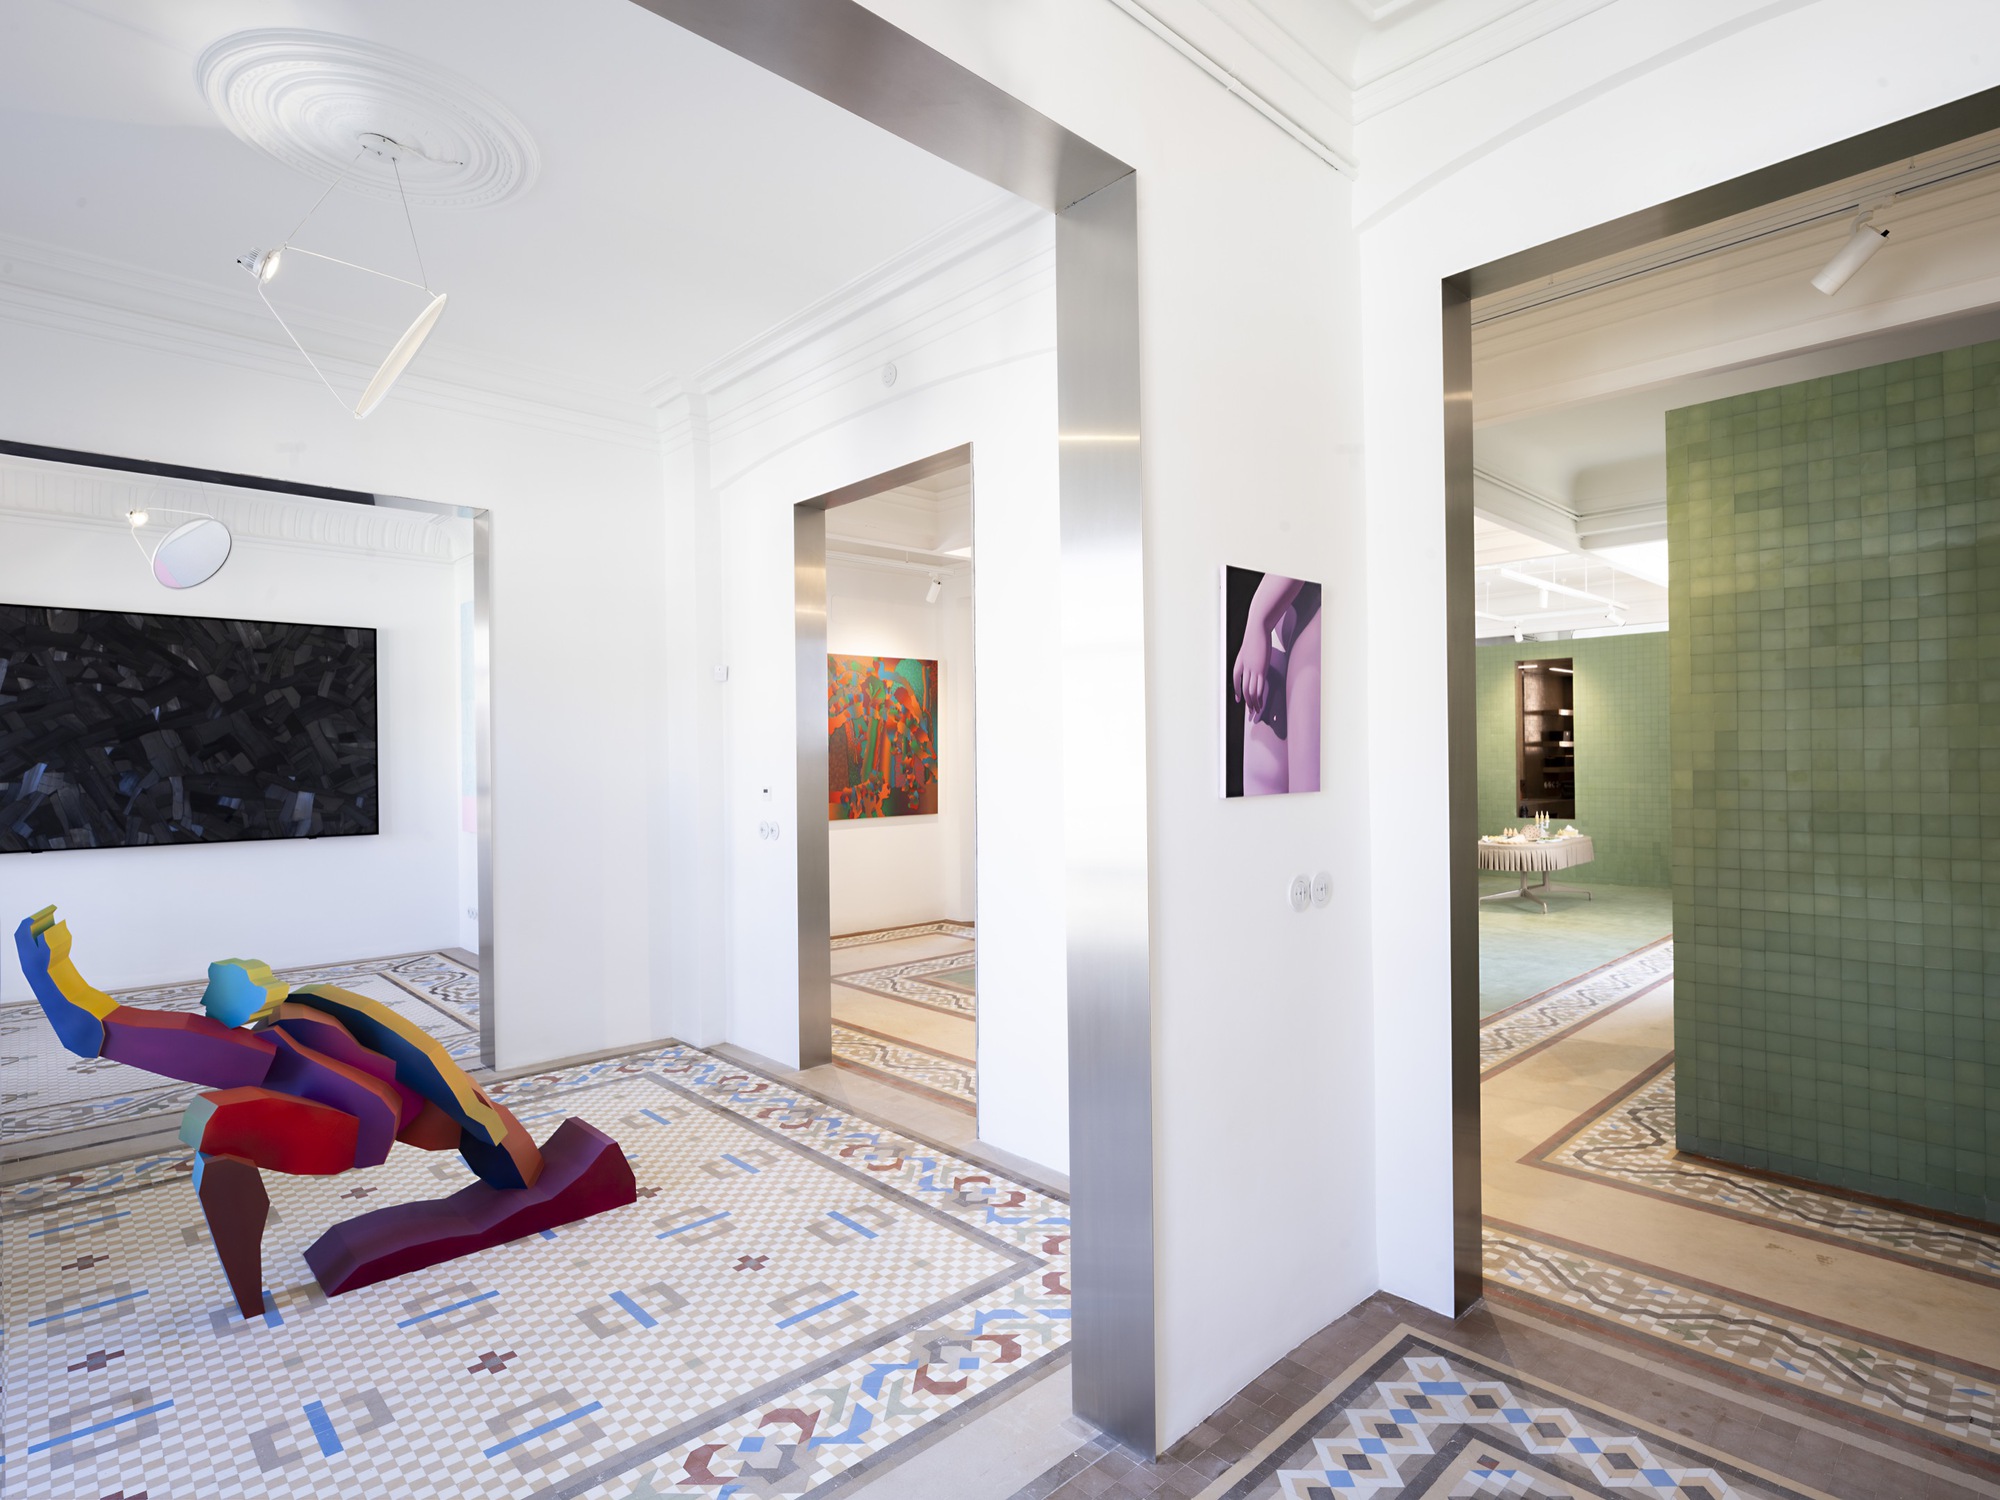 Дом-галерея на Гран Виа, Гранада / Аннона + Ана Фриас